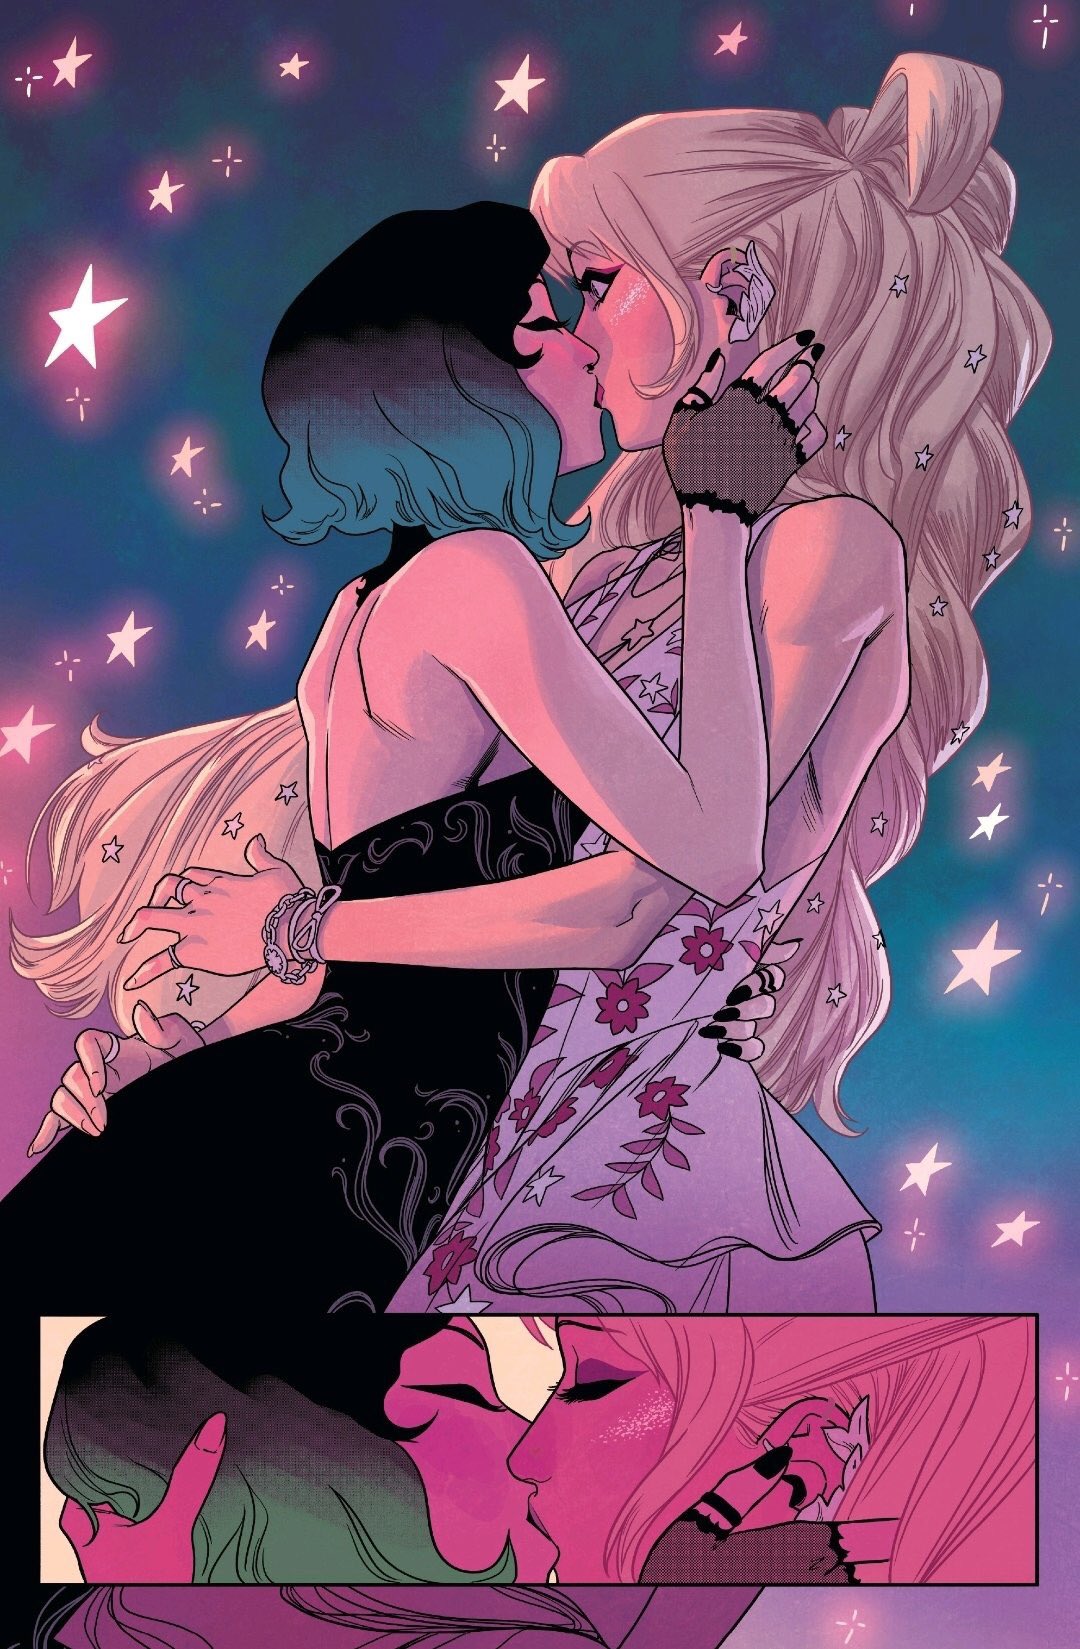 Nico e Karolina - Runaways - Marvel Comics - Beijo gay nas histórias em quadrinhos - Blog Farofeiros